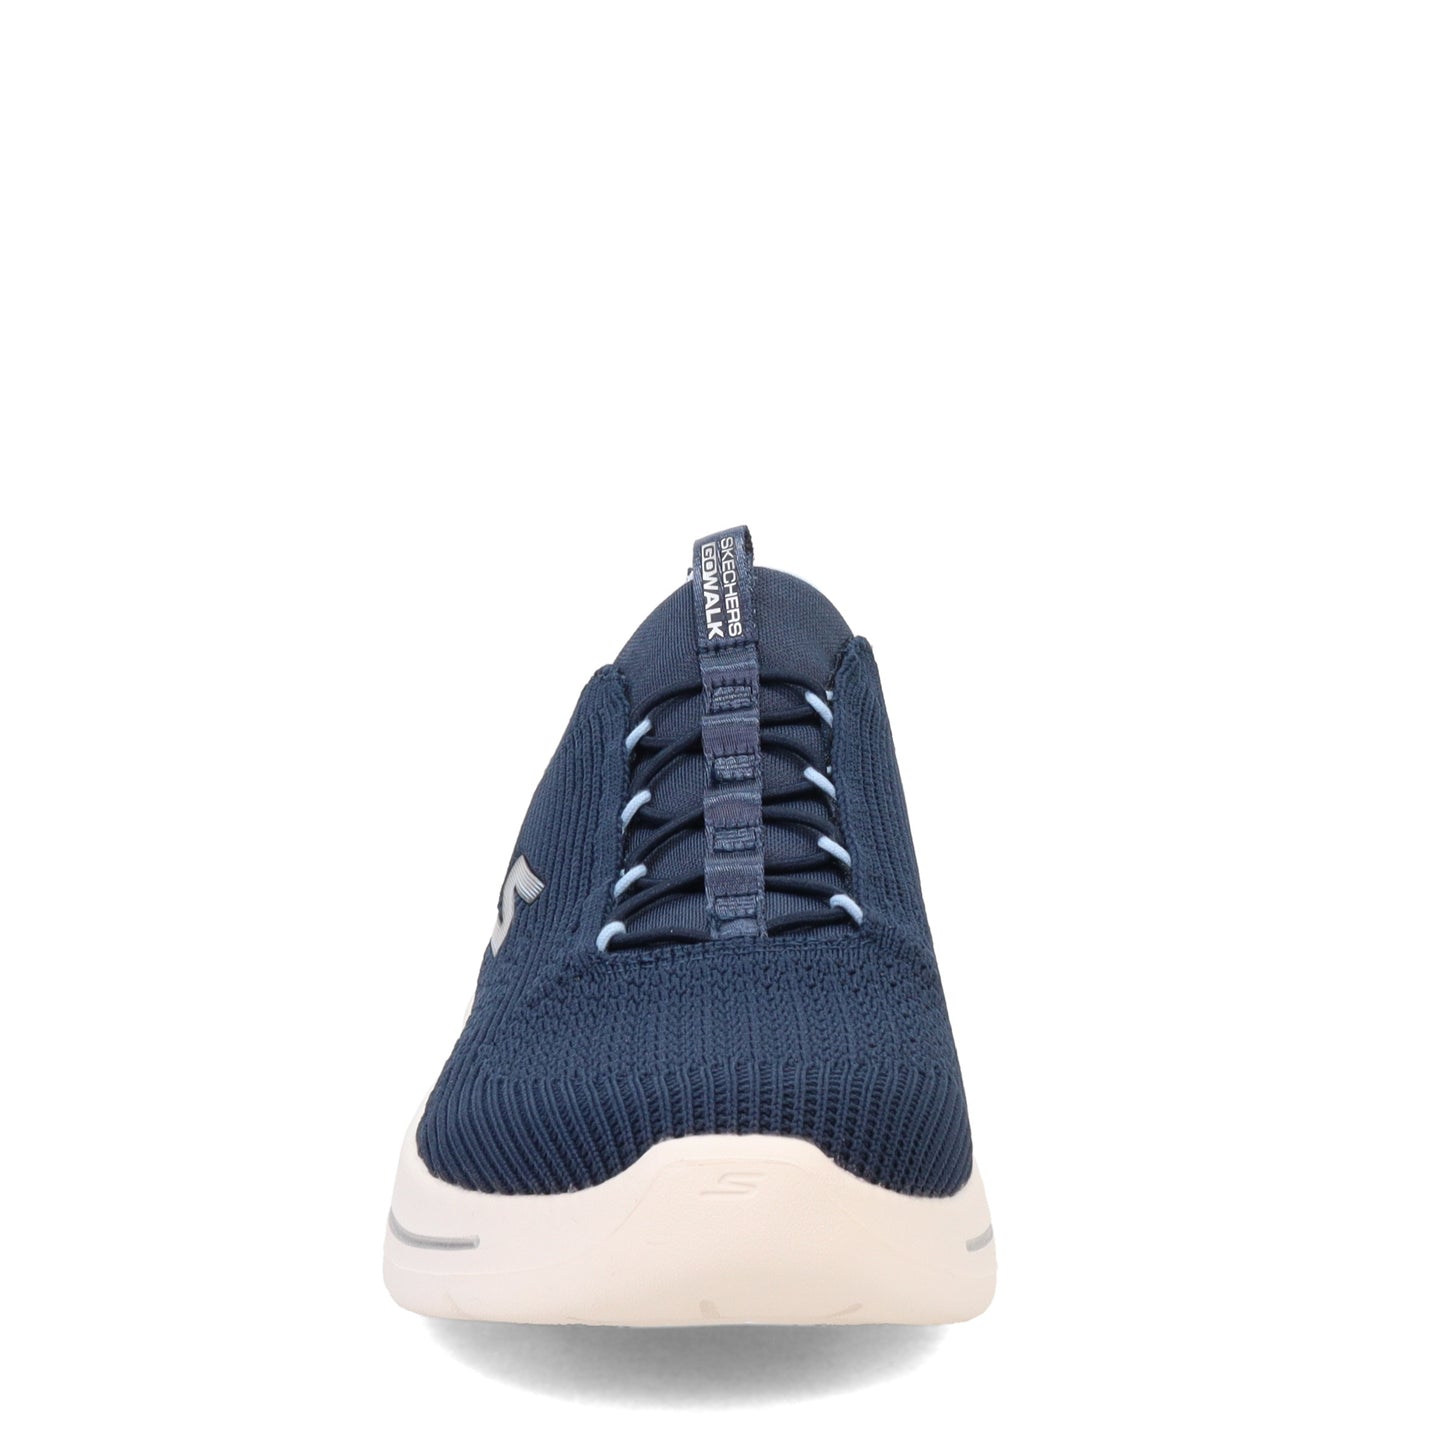 Peltz Shoes  Women's Skechers GO WALK Arch Fit - Crystal Waves Sneaker Navy Blue 124882-NVLB